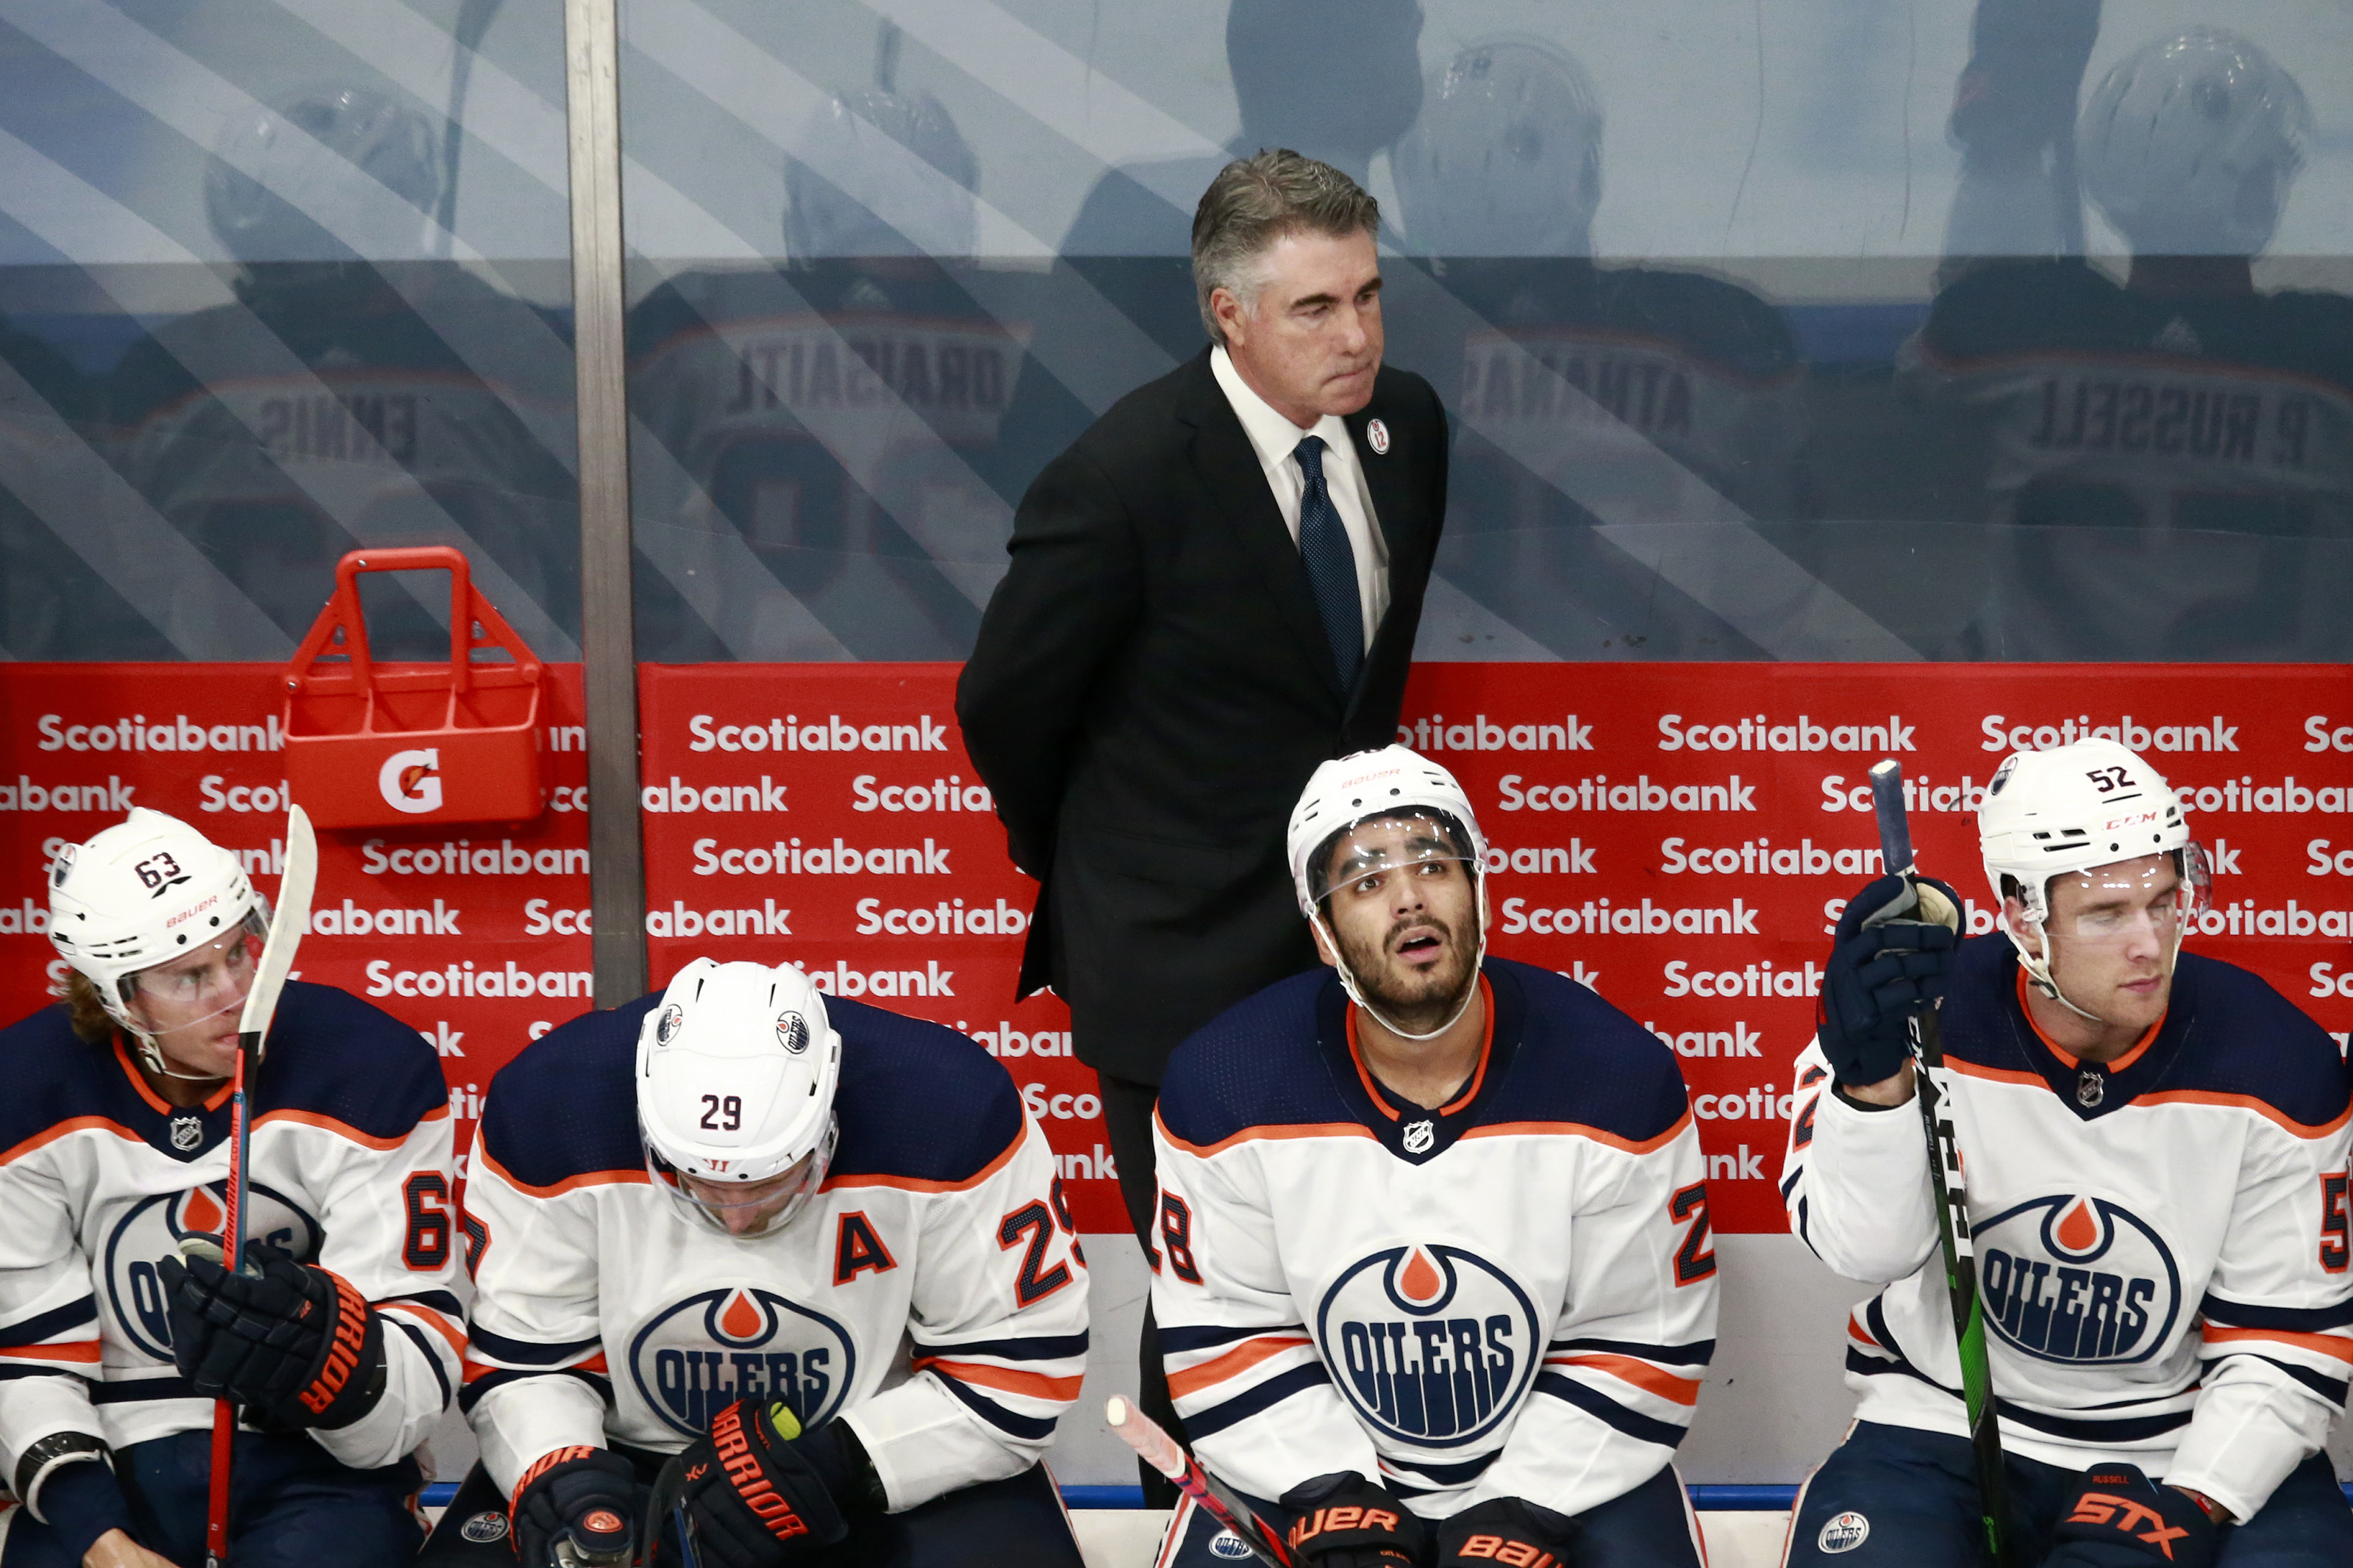 Worst to First: Edmonton Oilers Jerseys